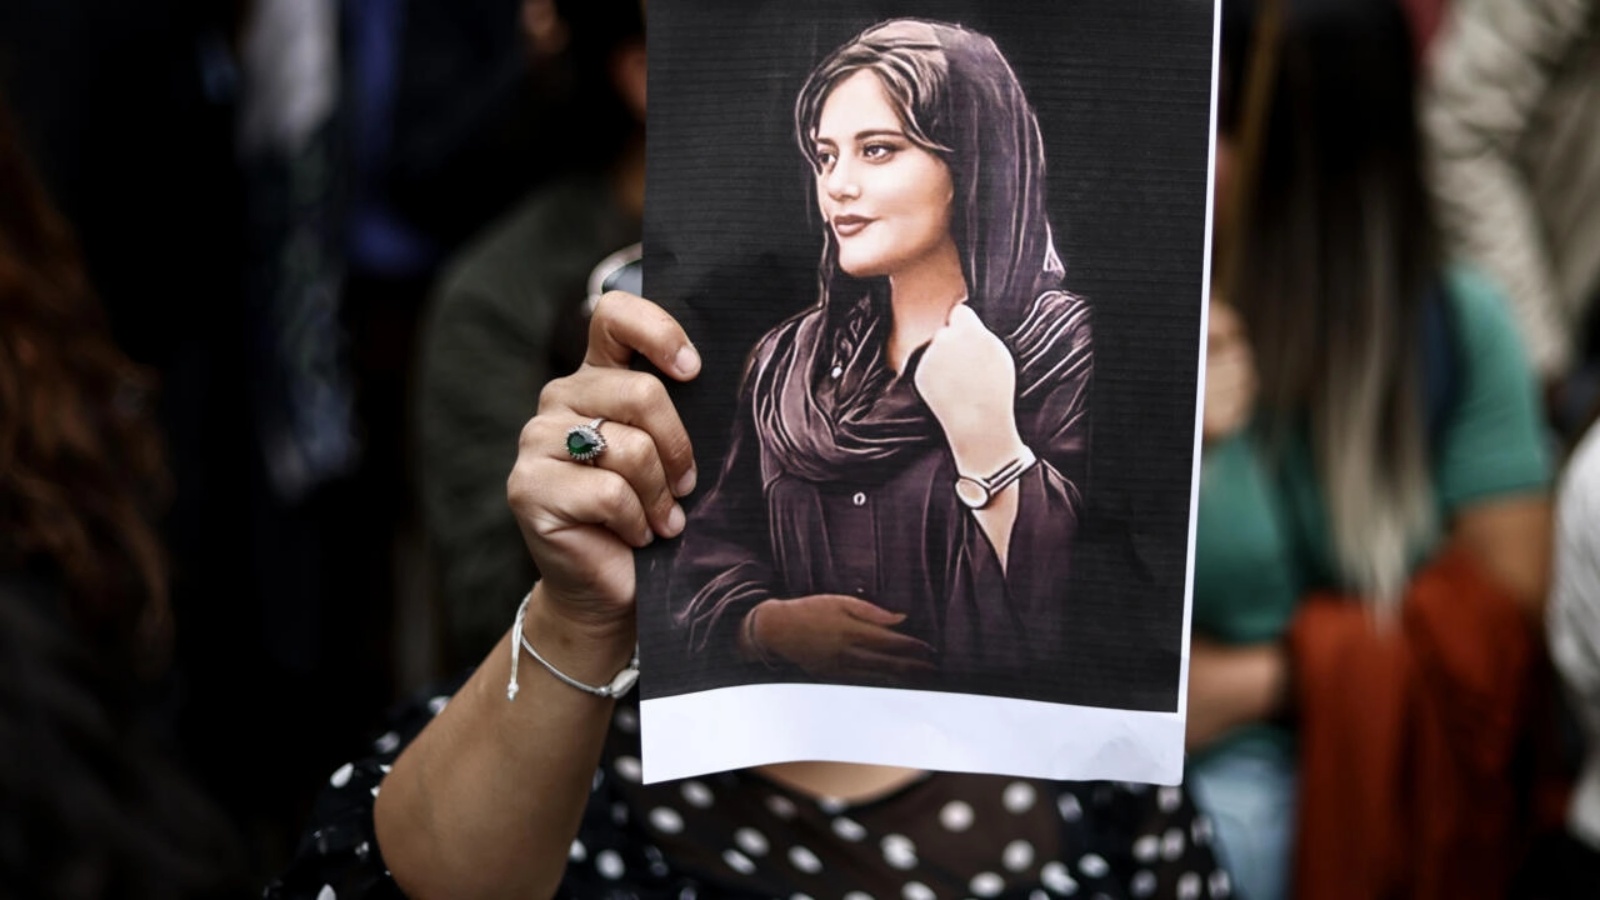 متظاهرة تحمل صورة مهسا أميني، خلال تظاهرة داعمة للحركة الاحتجاجية في إيران، في 23 سبتمبر 2022 في بروكسل